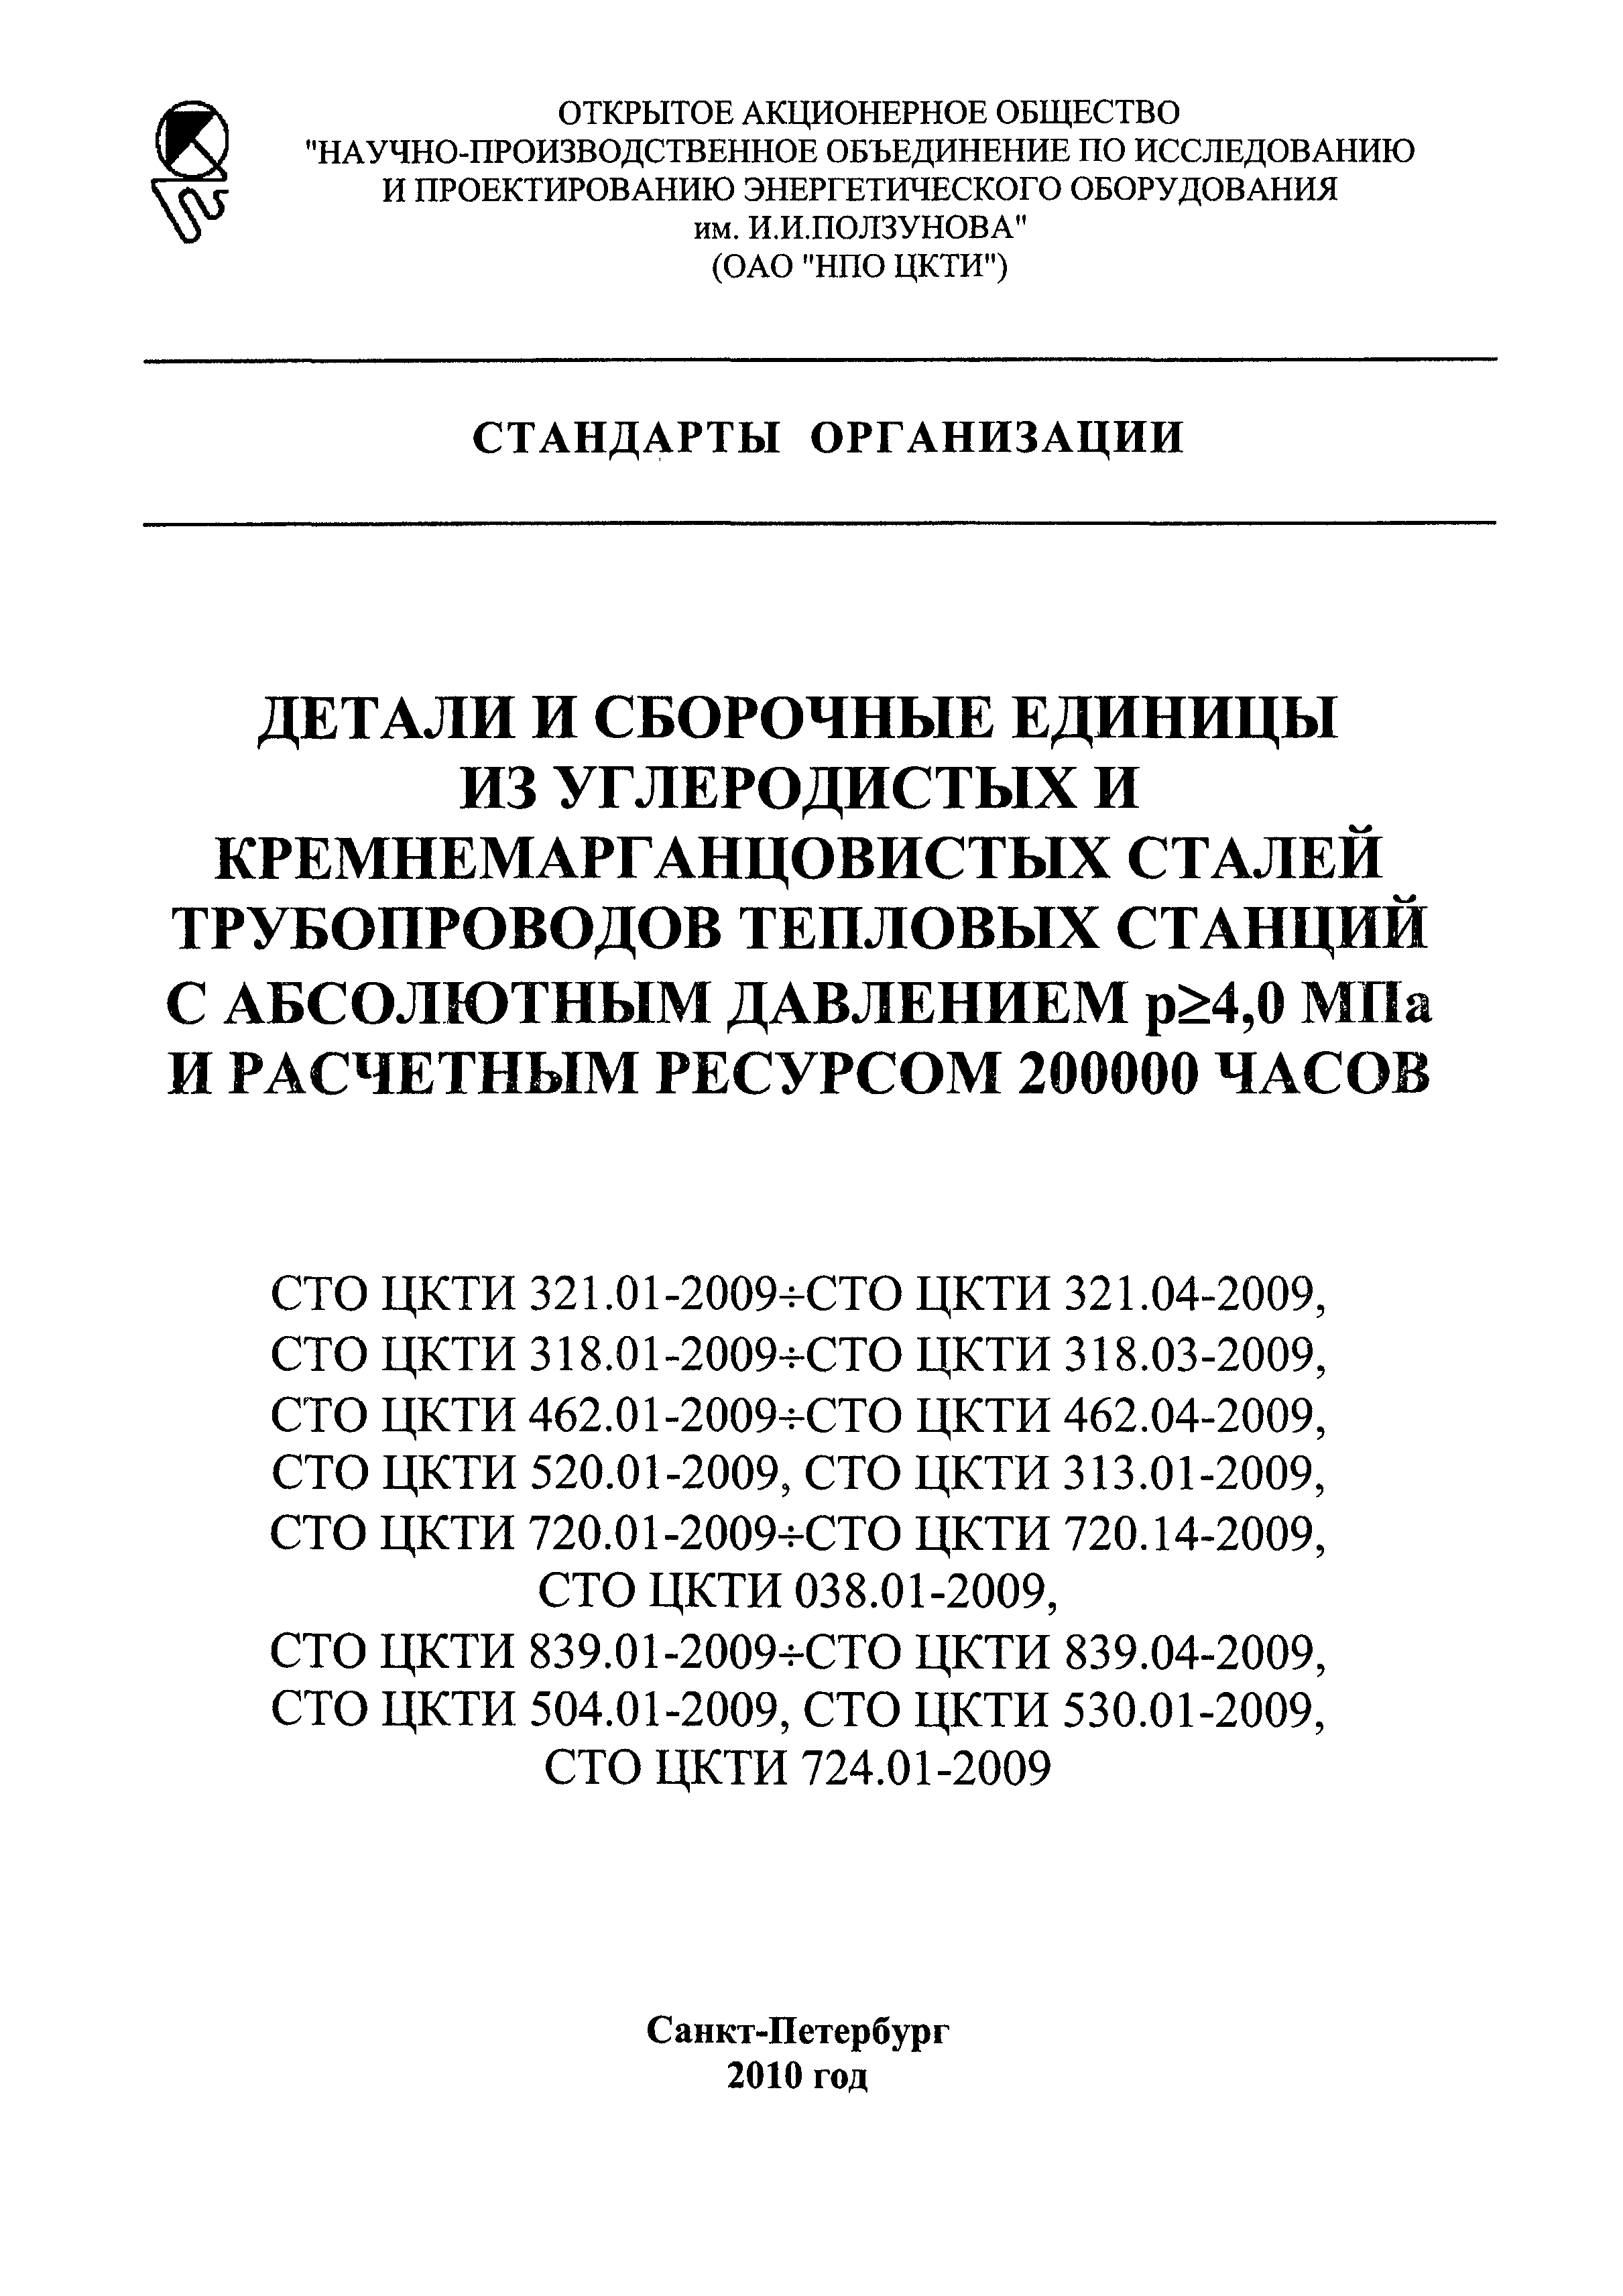 СТО ЦКТИ 720.13-2009